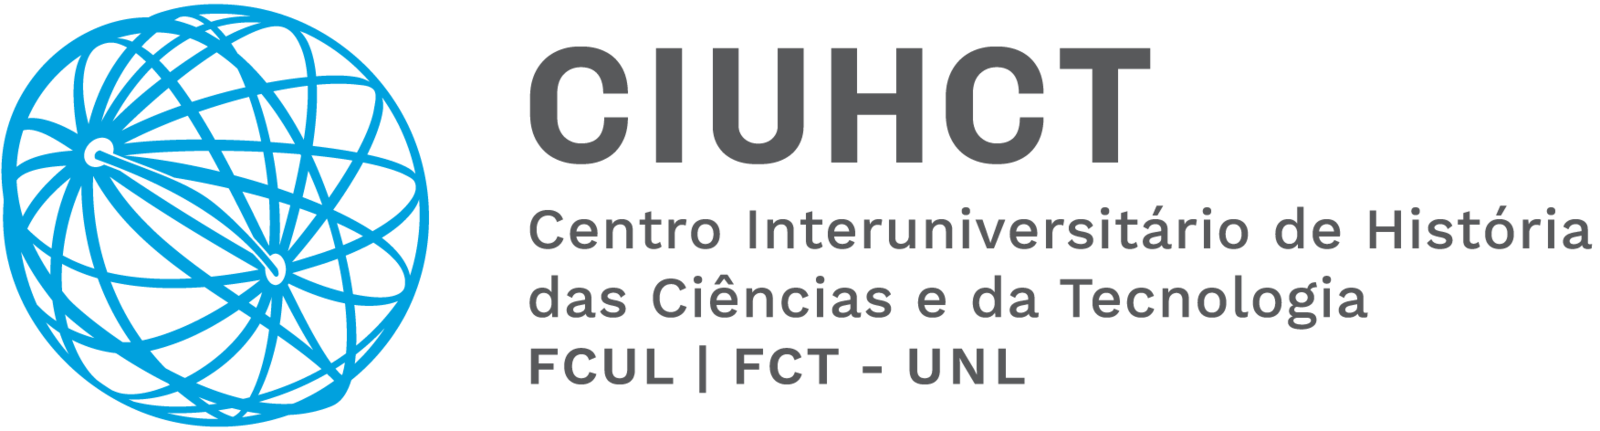 logo-ciuhct-h.png